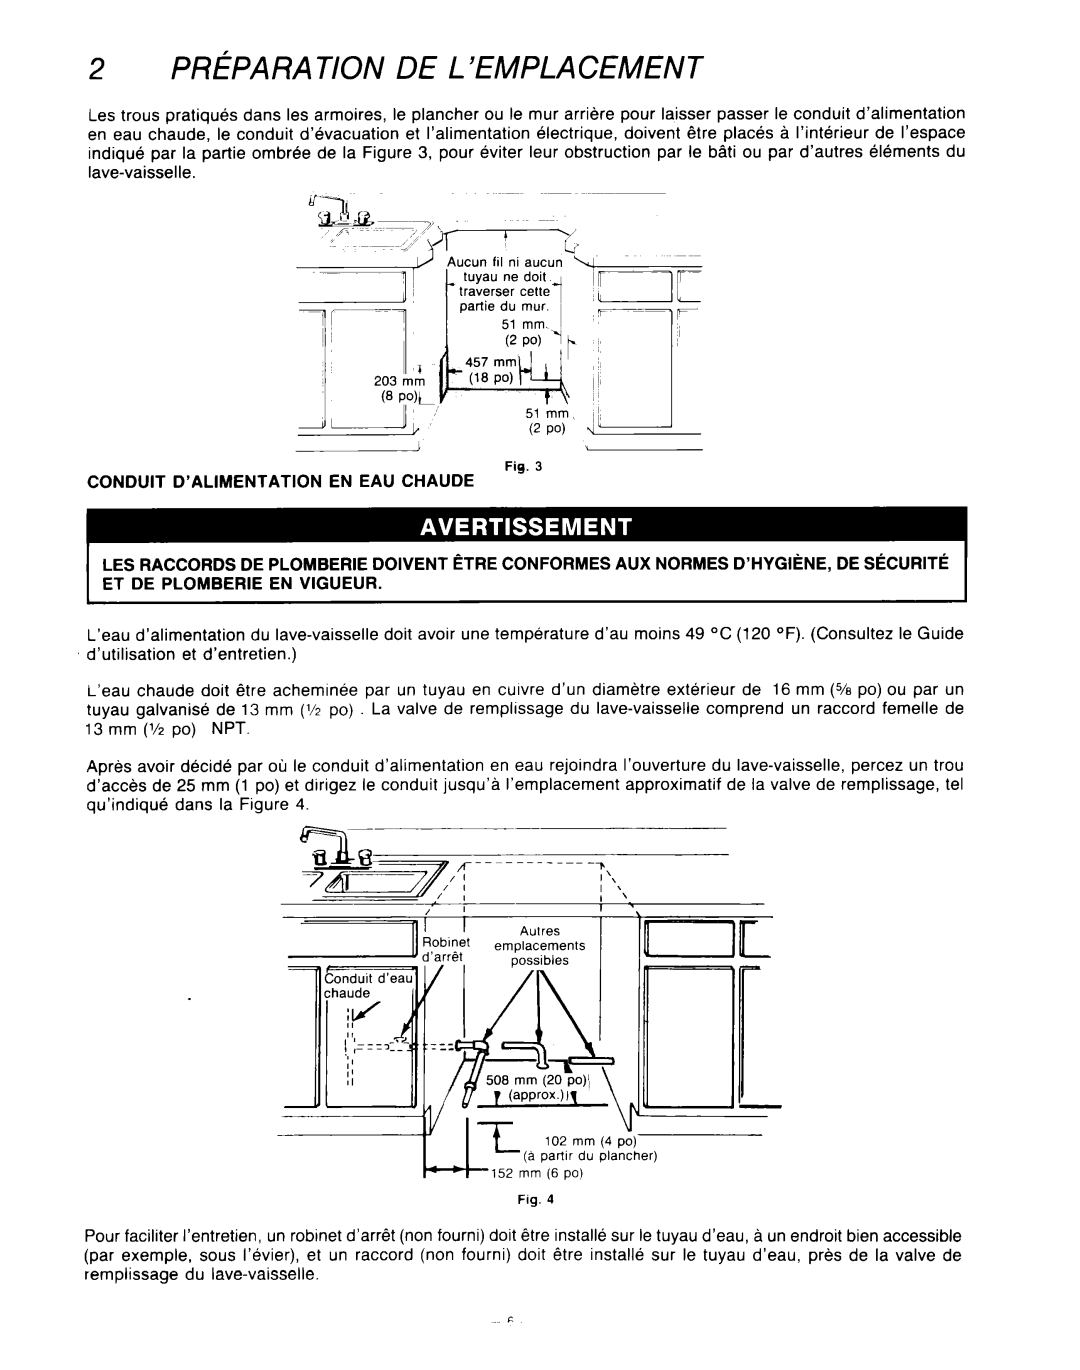 KitchenAid KUD-22 manual Preparation De L’Emplacement, 51 mm, 2 PO, a parfir du &a&her 152 mm 6 po 